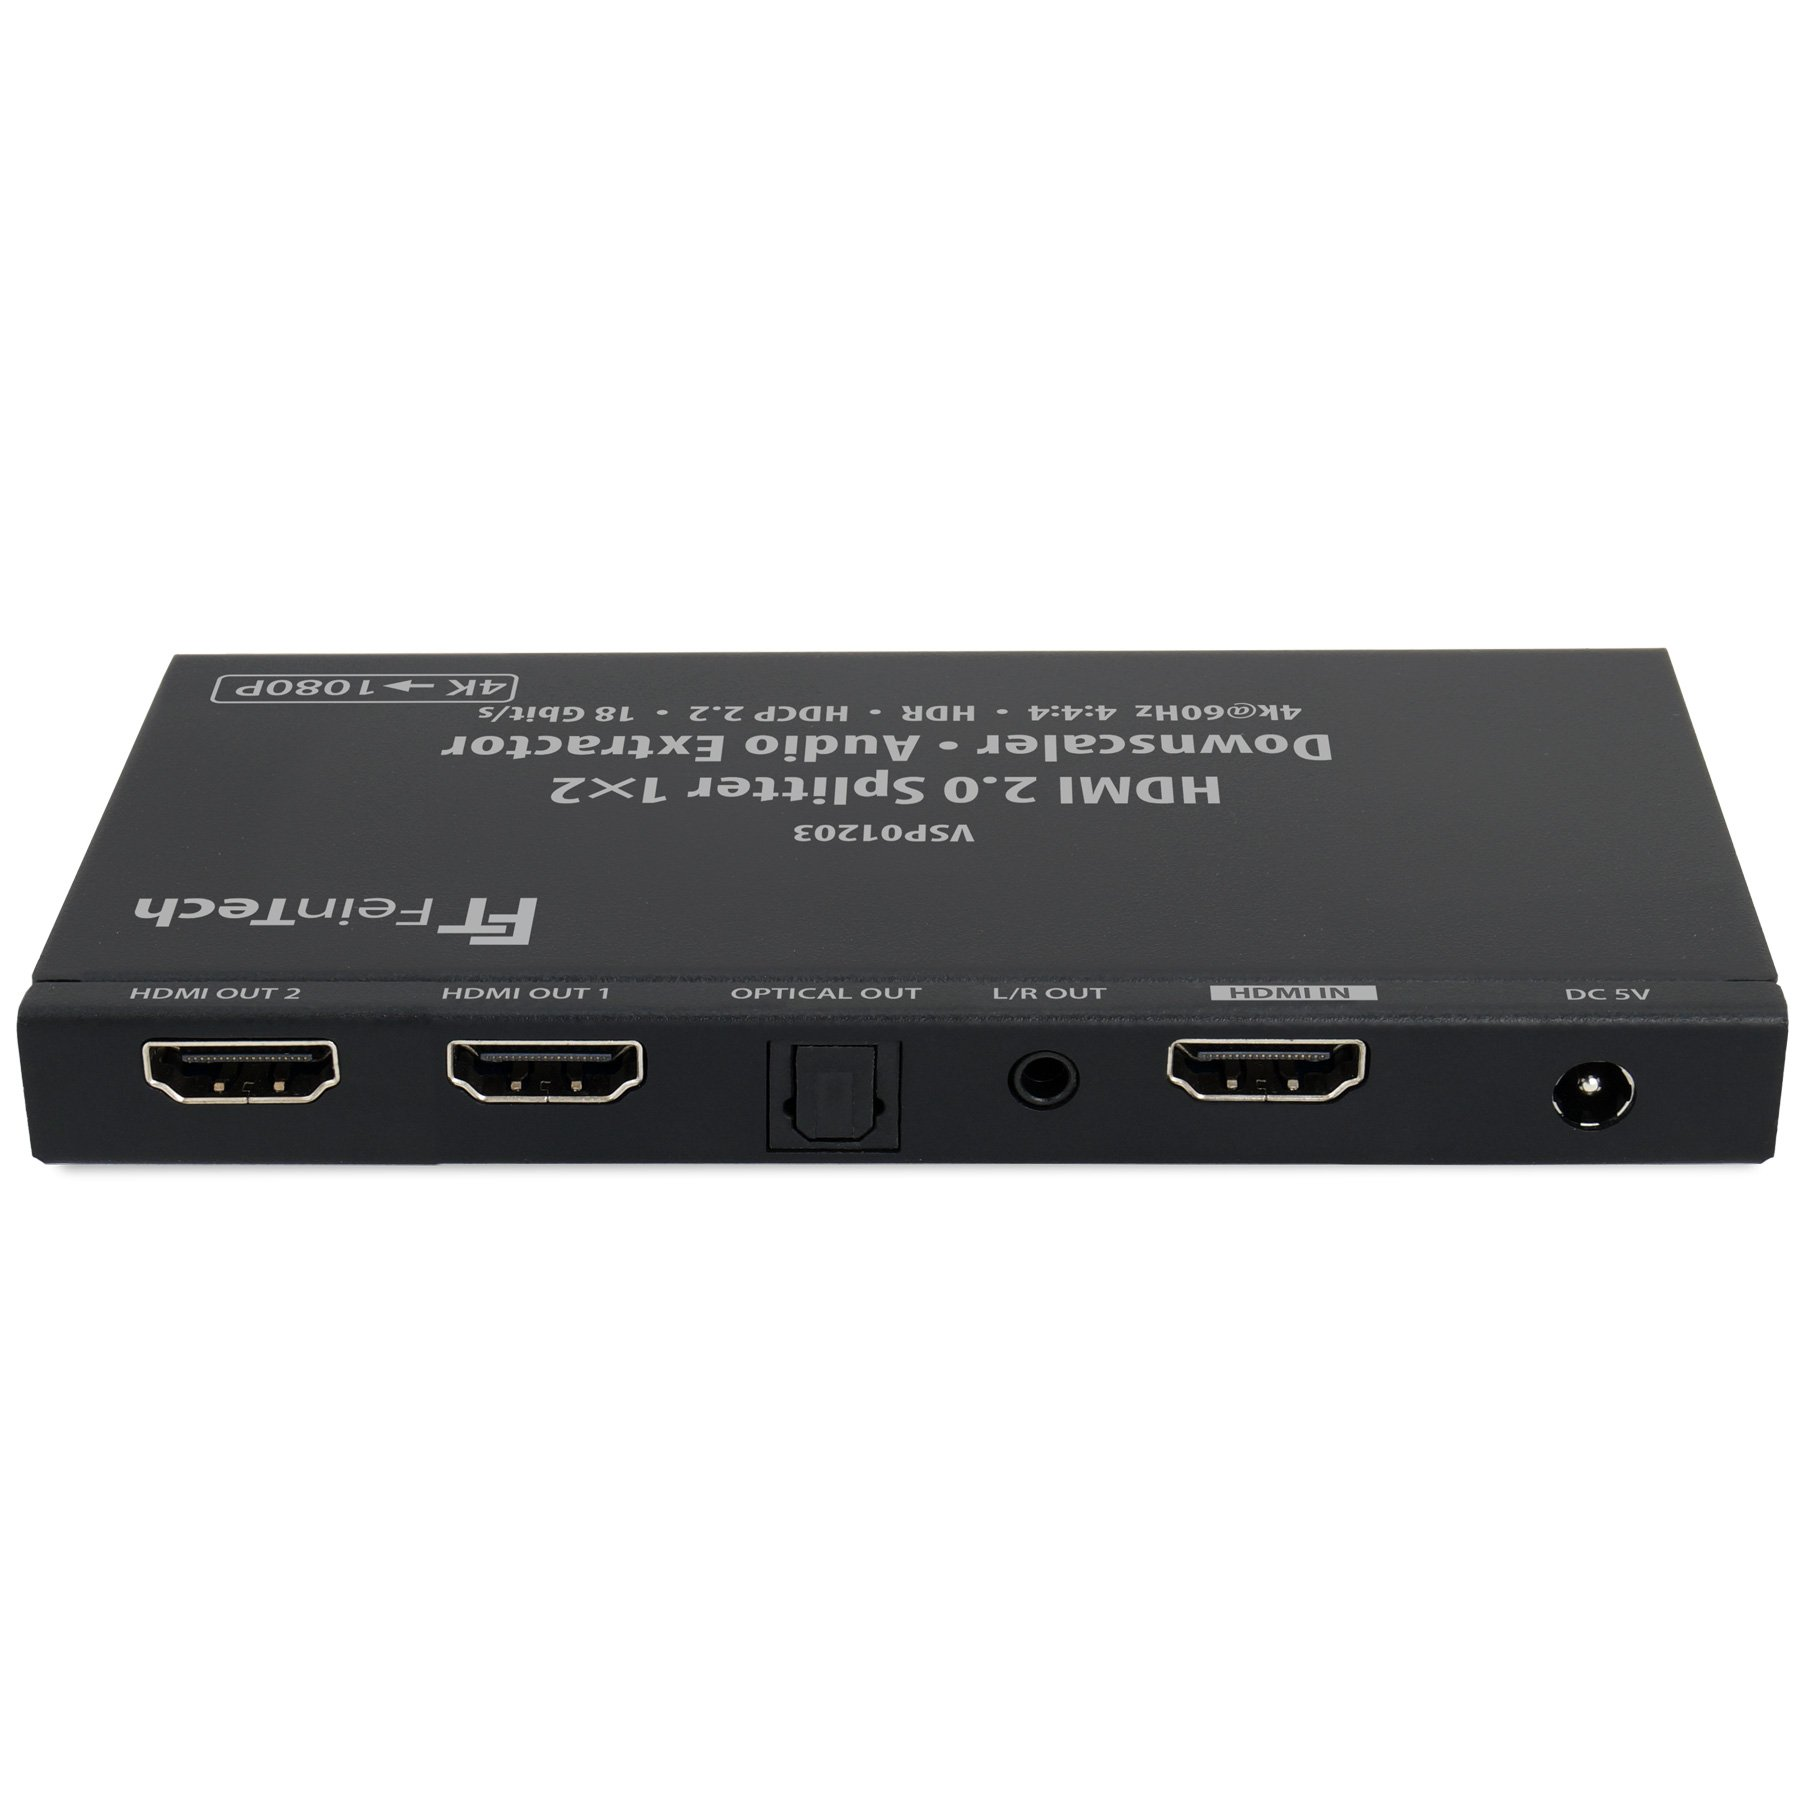 Splitter HDMI Audio HDMI VSP01203 2 Verteiler Extractor FEINTECH mit 1x